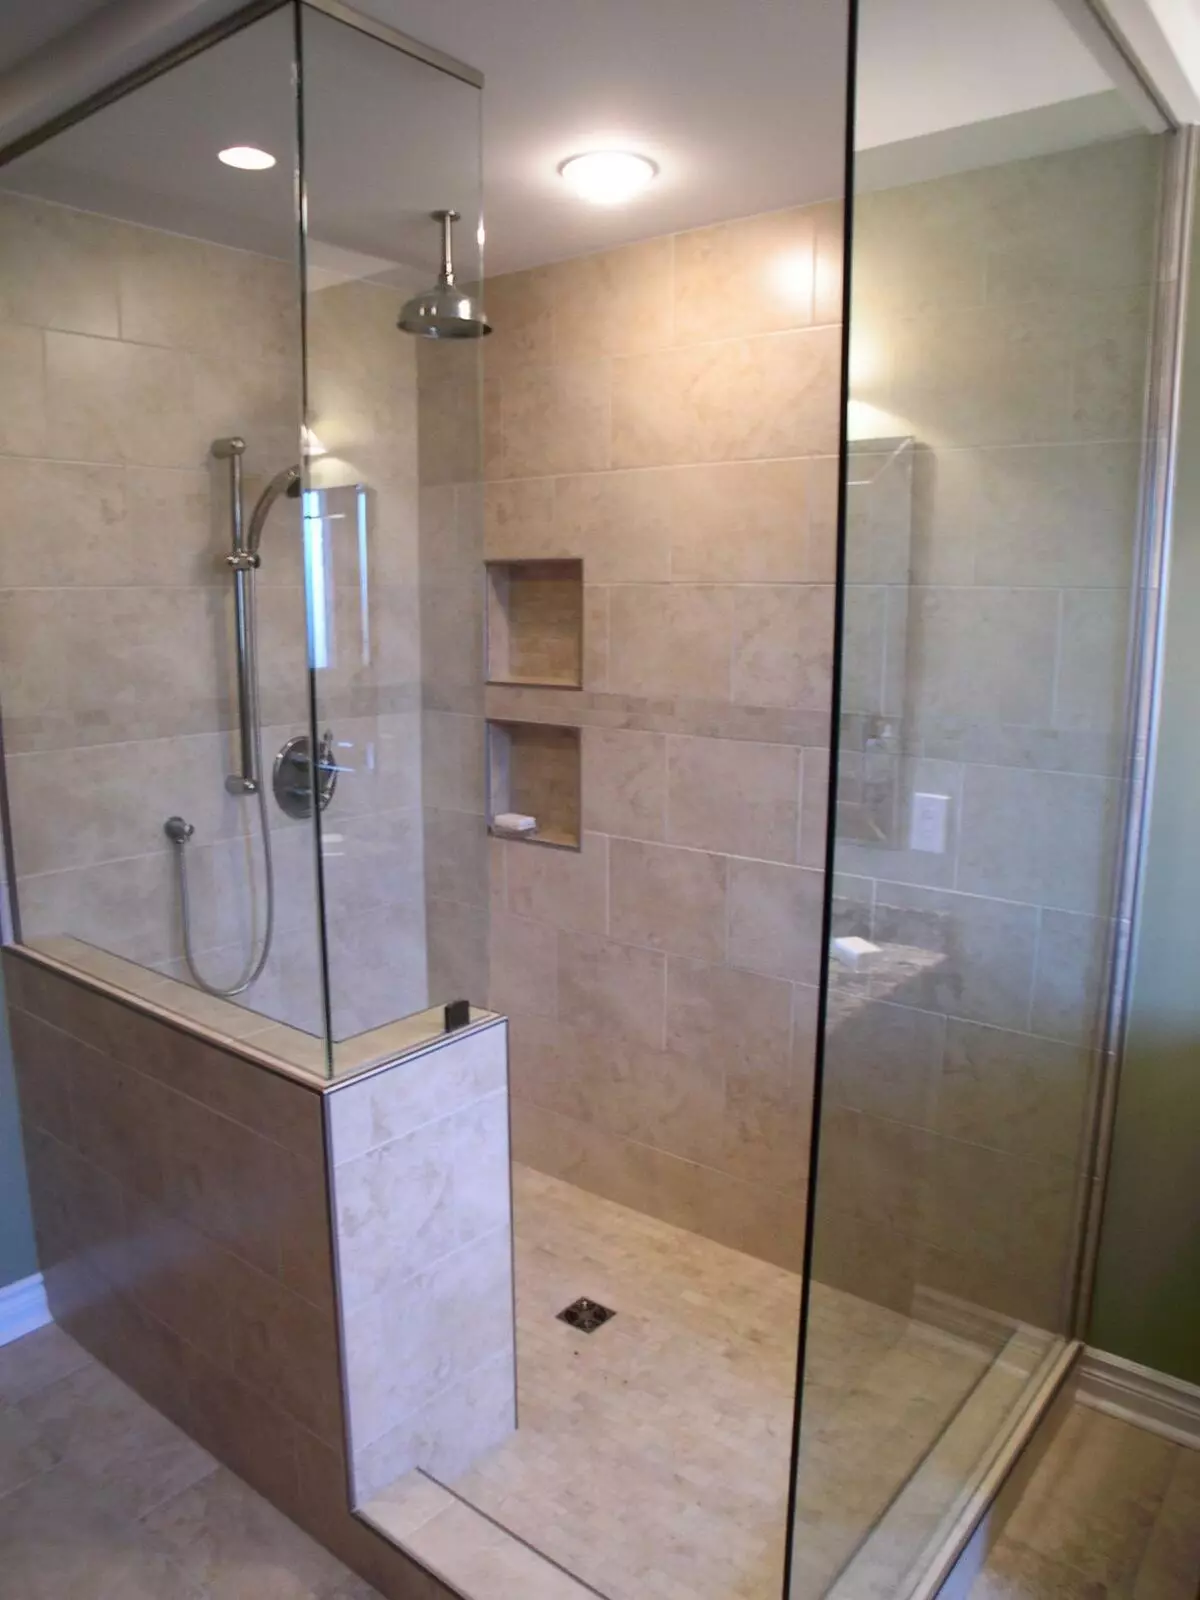 Dušas be dušo vonioje (57 nuotraukos): vonios kambario dizainas ir apdaila su sielos scenoje be salono privačiame name ir bute 21400_5